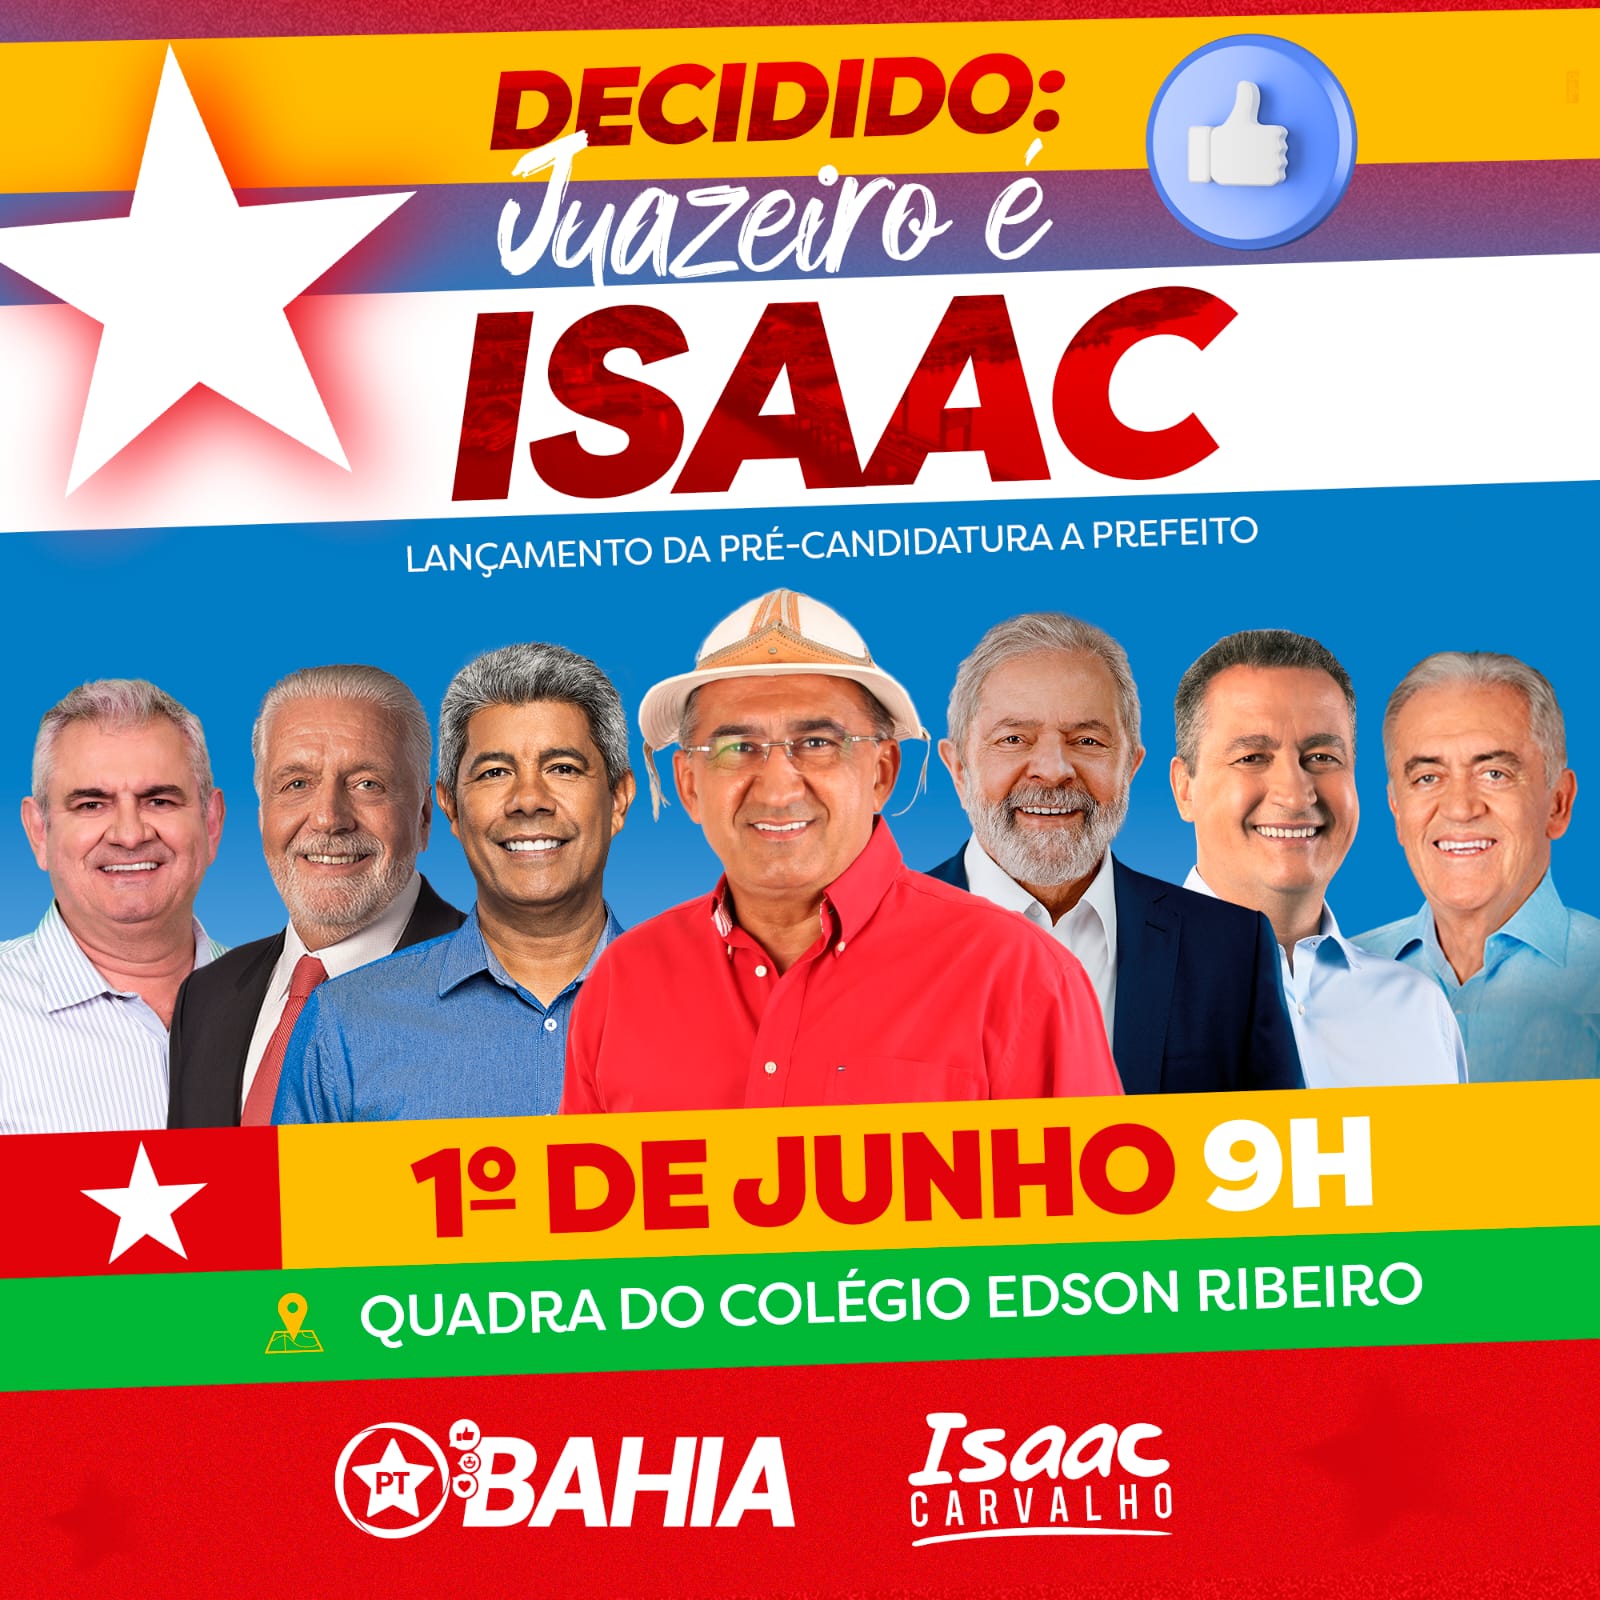 Juazeiro: Pré-candidato Isaac Carvalho mostra confiança e convoca seguidores para ato de homologação de sua pré-candidatura, neste sábado (01)